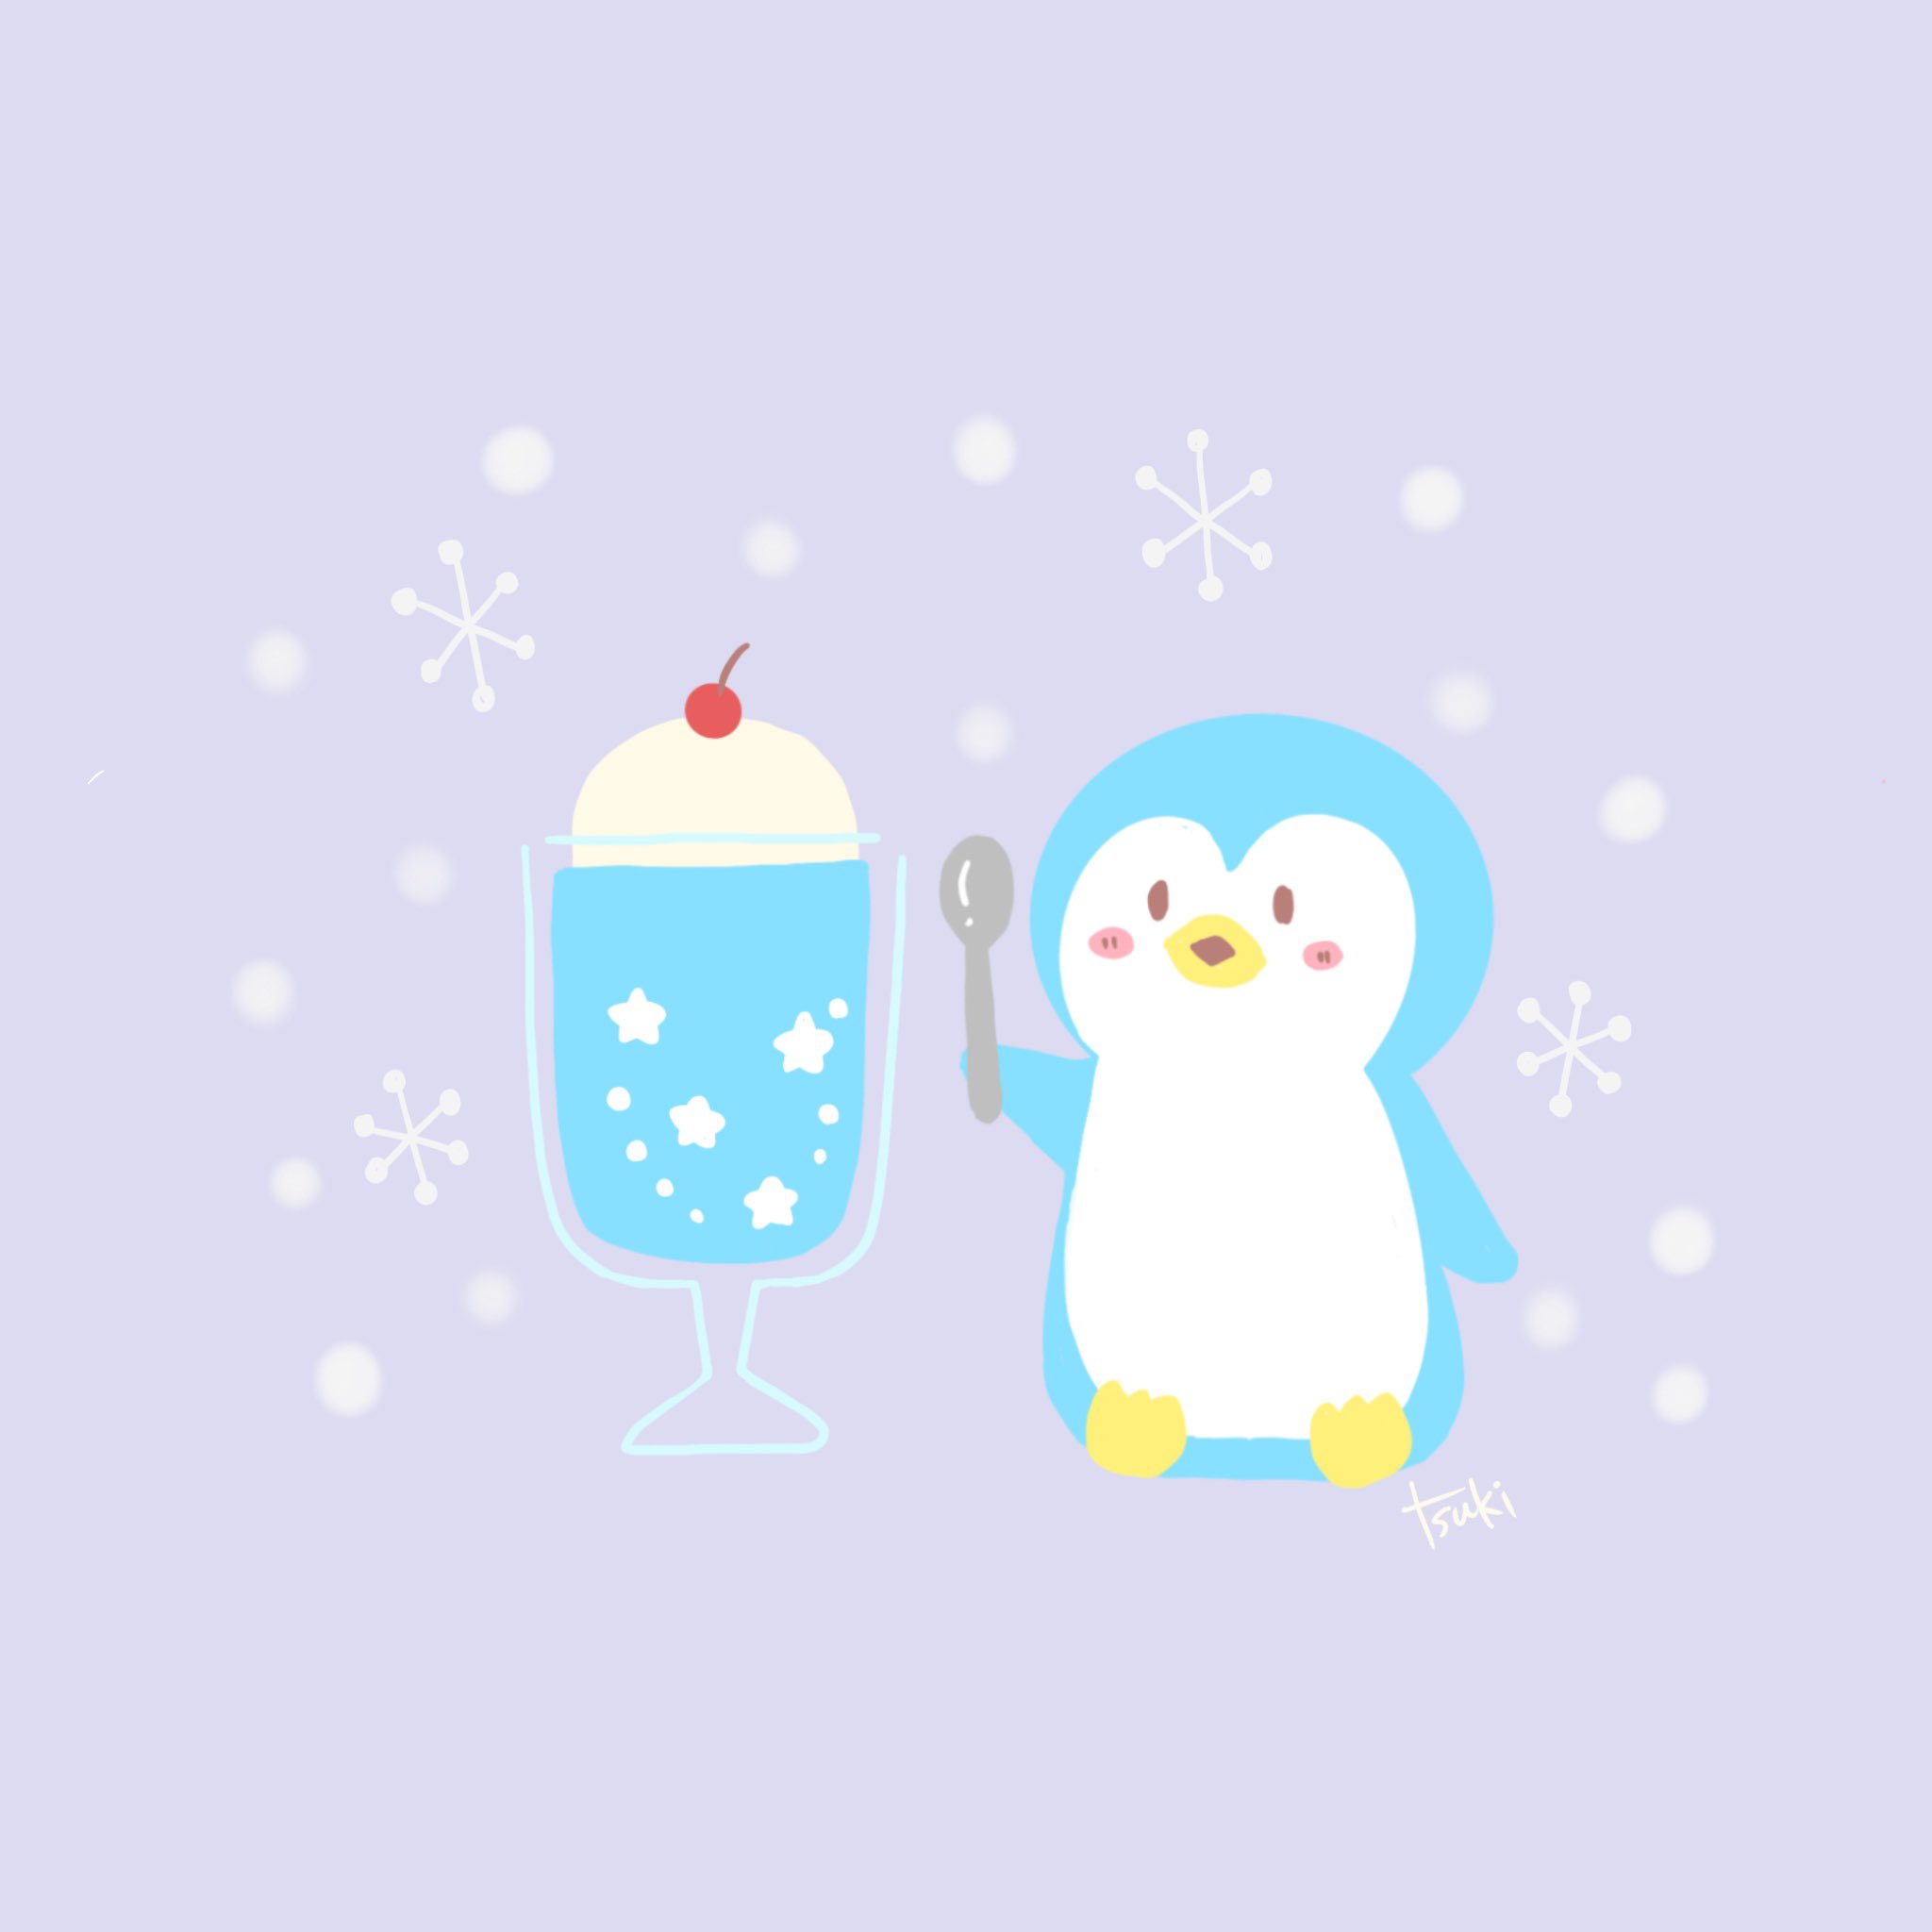 Tsuki 寒いときに食べるアイスは なかなか美味しいのだ イラスト イラスト好きな人と繋がりたい ゆるい絵 ゆるいイラスト ゆるかわ 癒し お絵描き フォローミー Illust クリームソーダ ペンギンイラスト T Co Wkpdpbekr7 Twitter